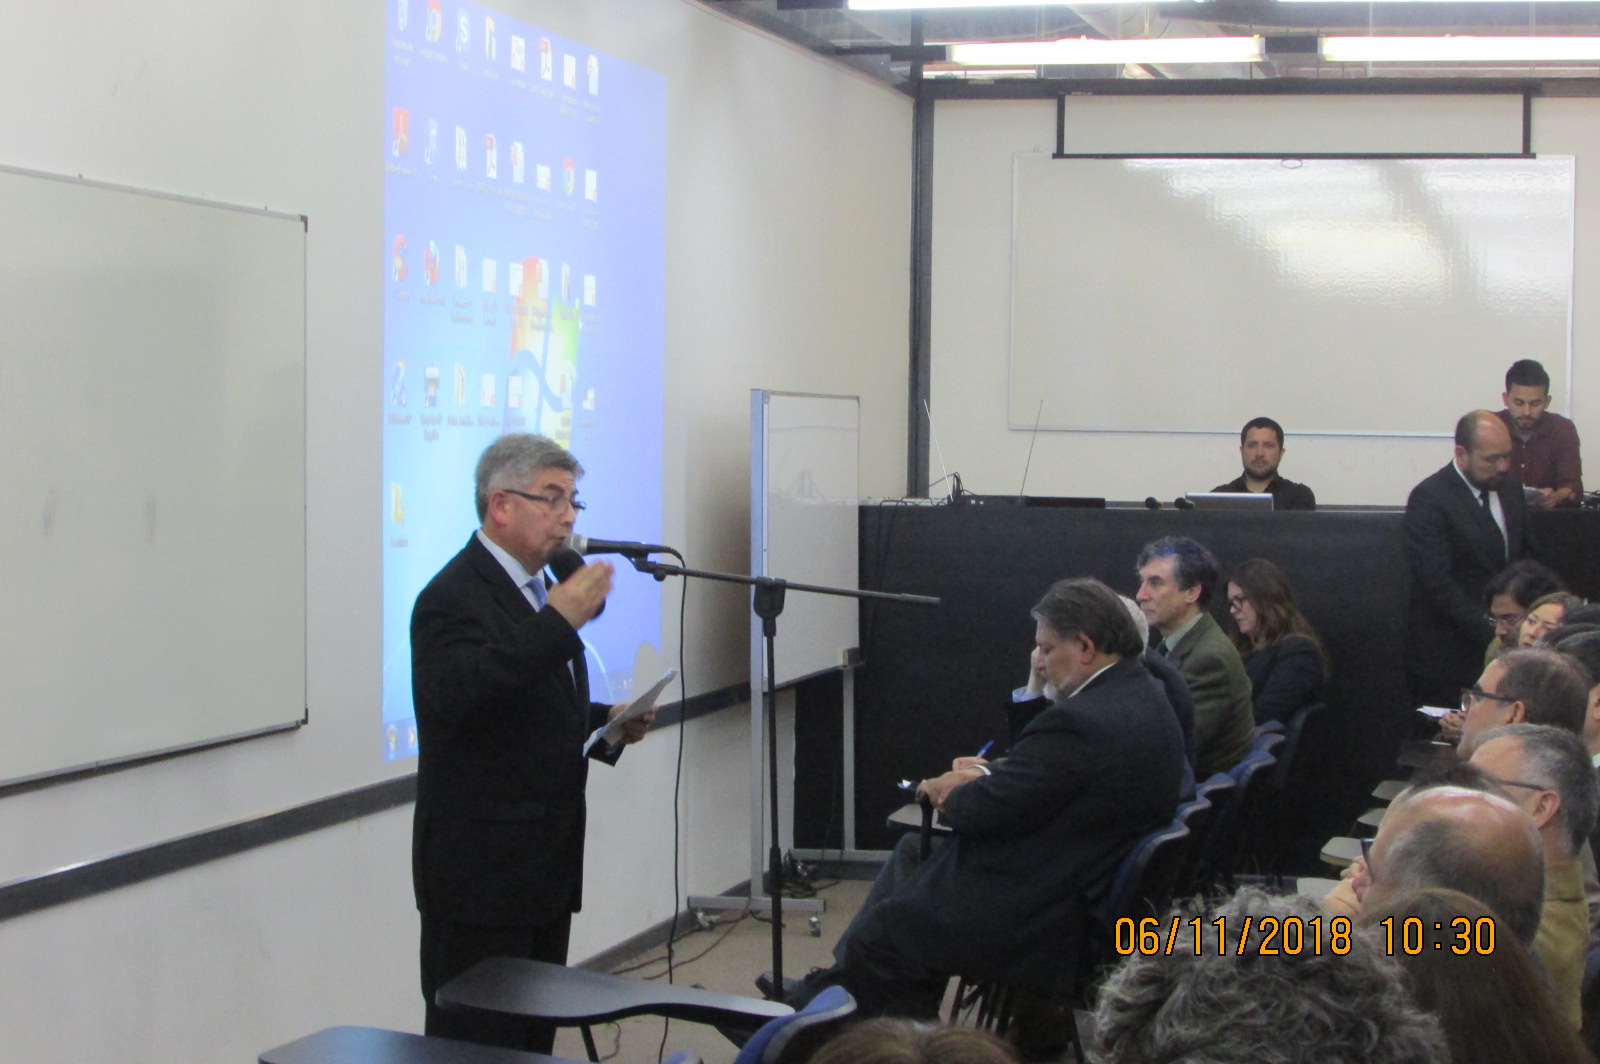 Director de Escuela profesor Uriel Padilla Carreño dando las palabras de bienvenida